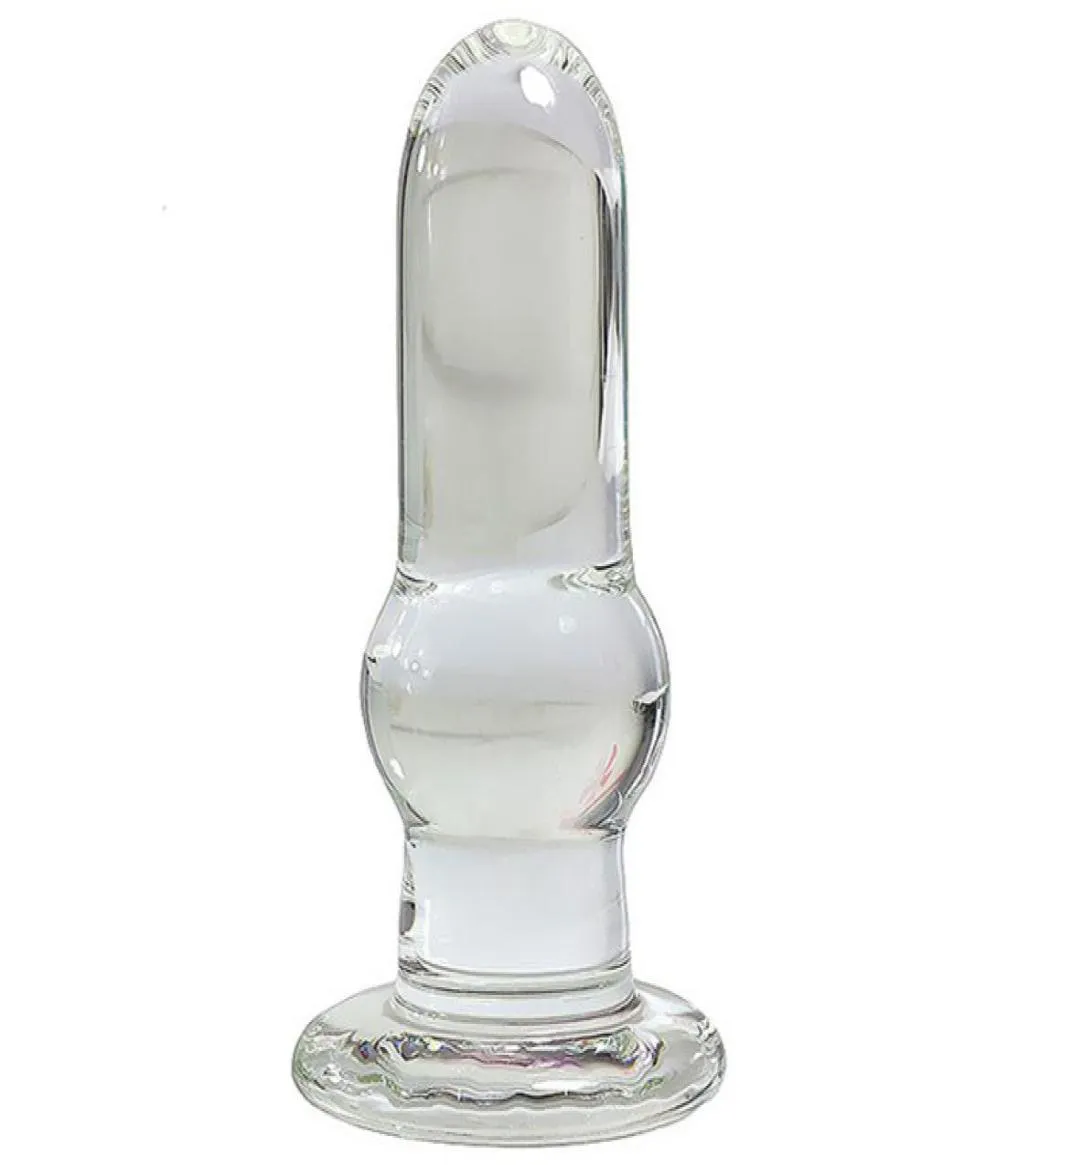 Tappo anale di vetro trasparente 134 cm dilator anale dildo g Spot Spot tappo di buttos di vetro per donne giocattoli sessuali di testa Y190625923992